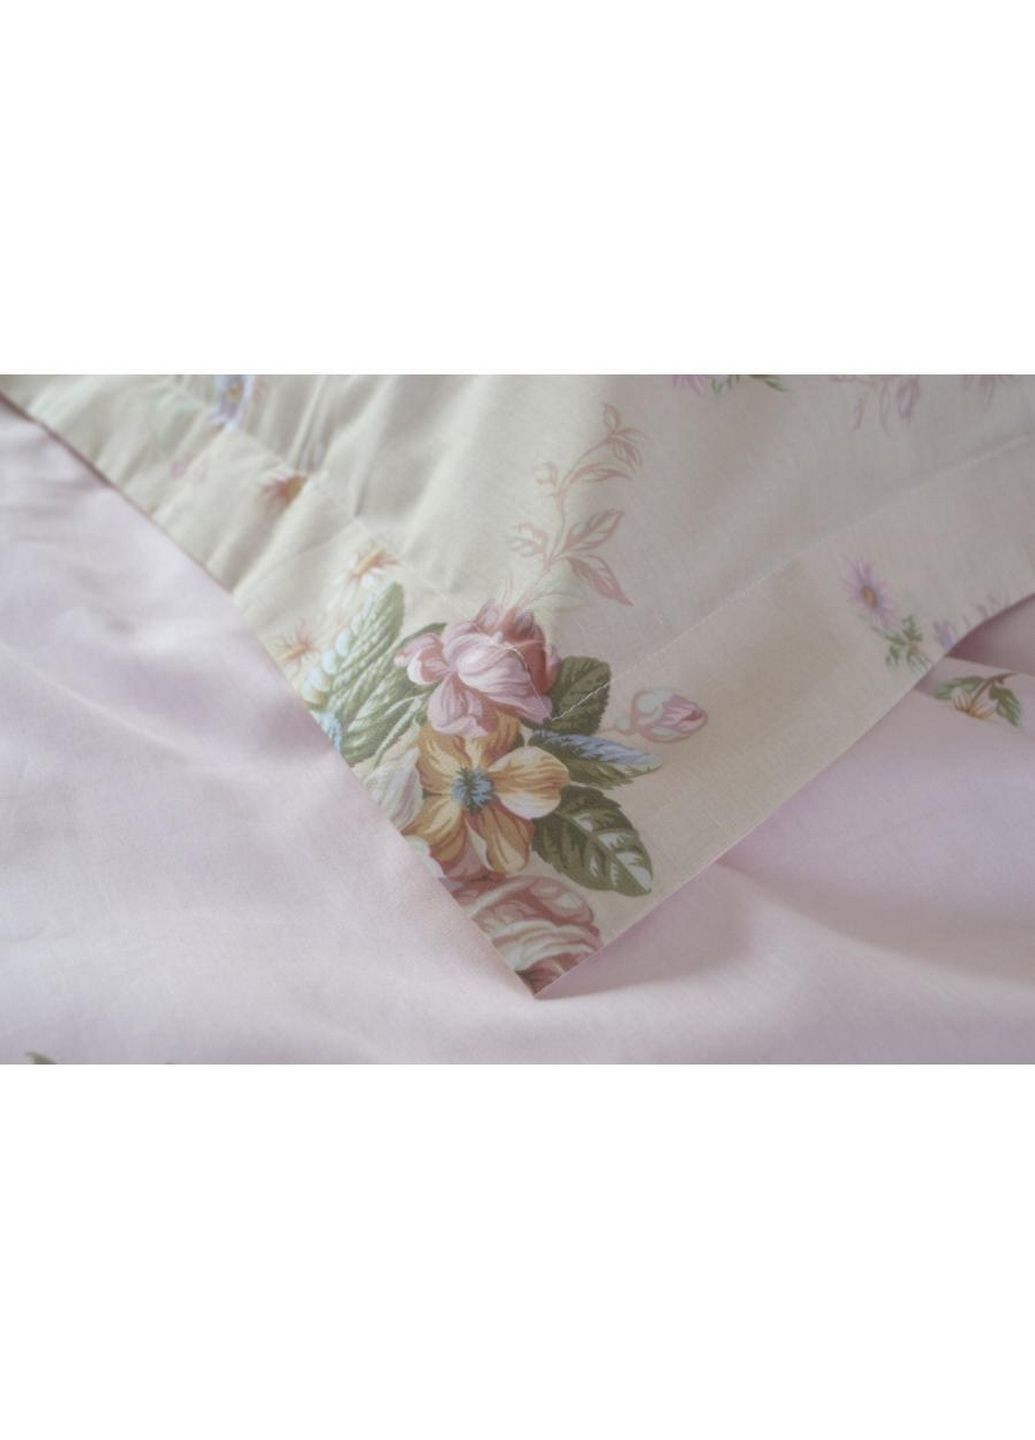 Спальный комплект постельного белья Lotus Home (288188305)